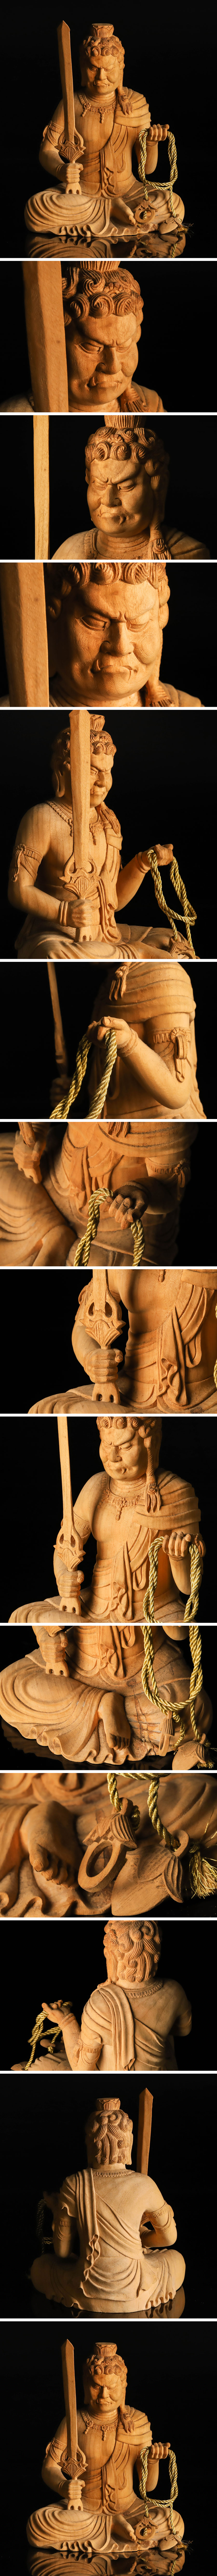 【大人気在庫】仏教美術 木彫 不動明王像 座像 TF302 仏像